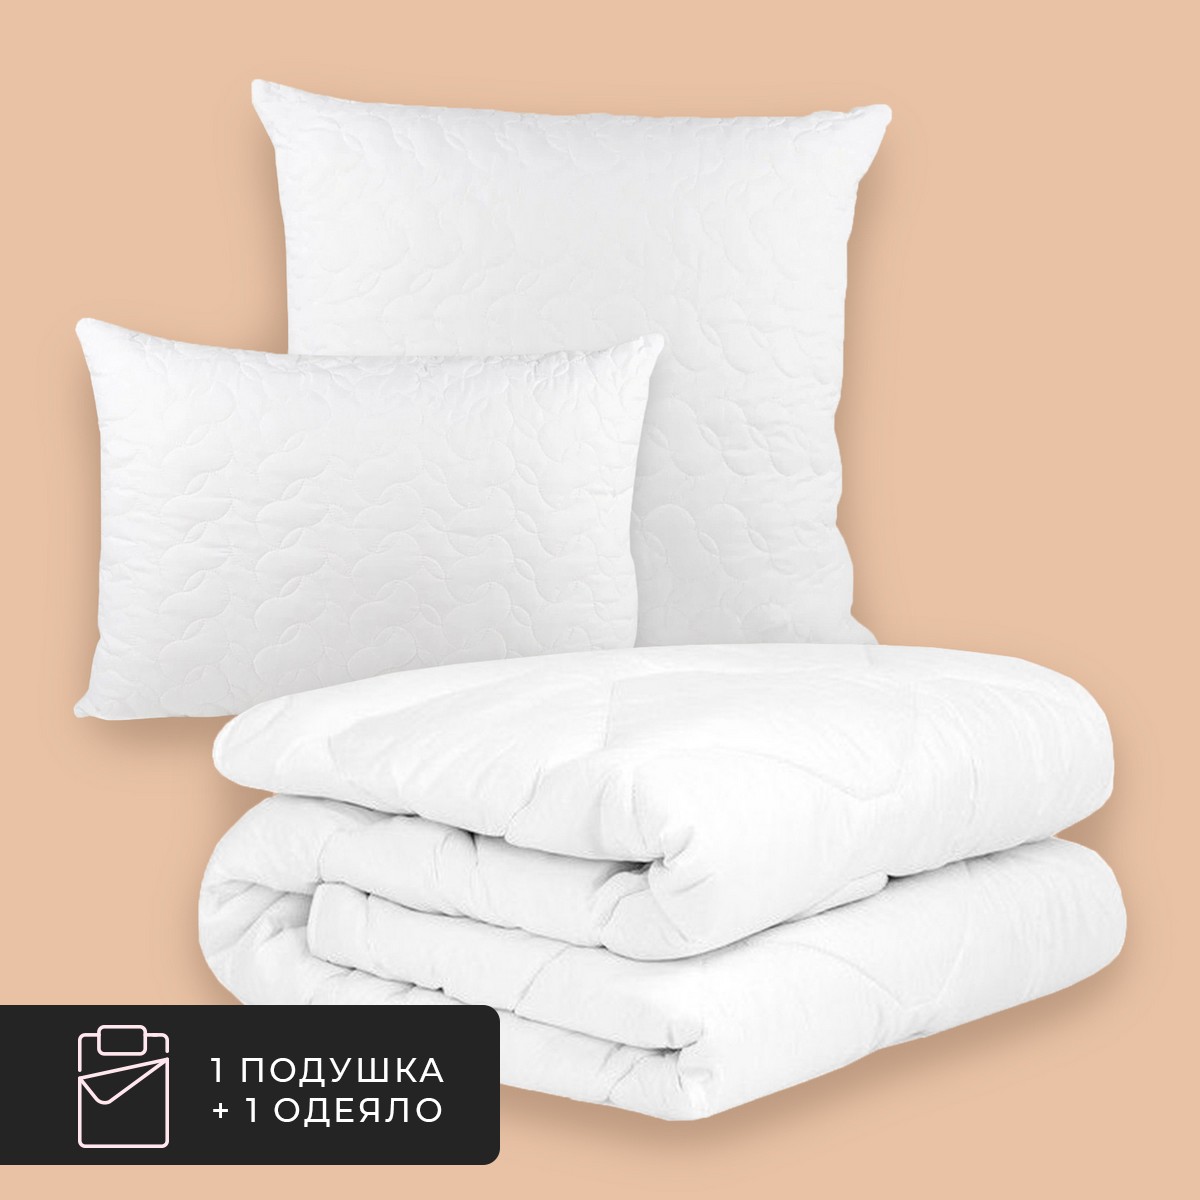 Набор 1 одеяло + 1 подушка Алоэ Вера, бамбуковое волокно в микрофибре (140х200, 50х70) Daily by T